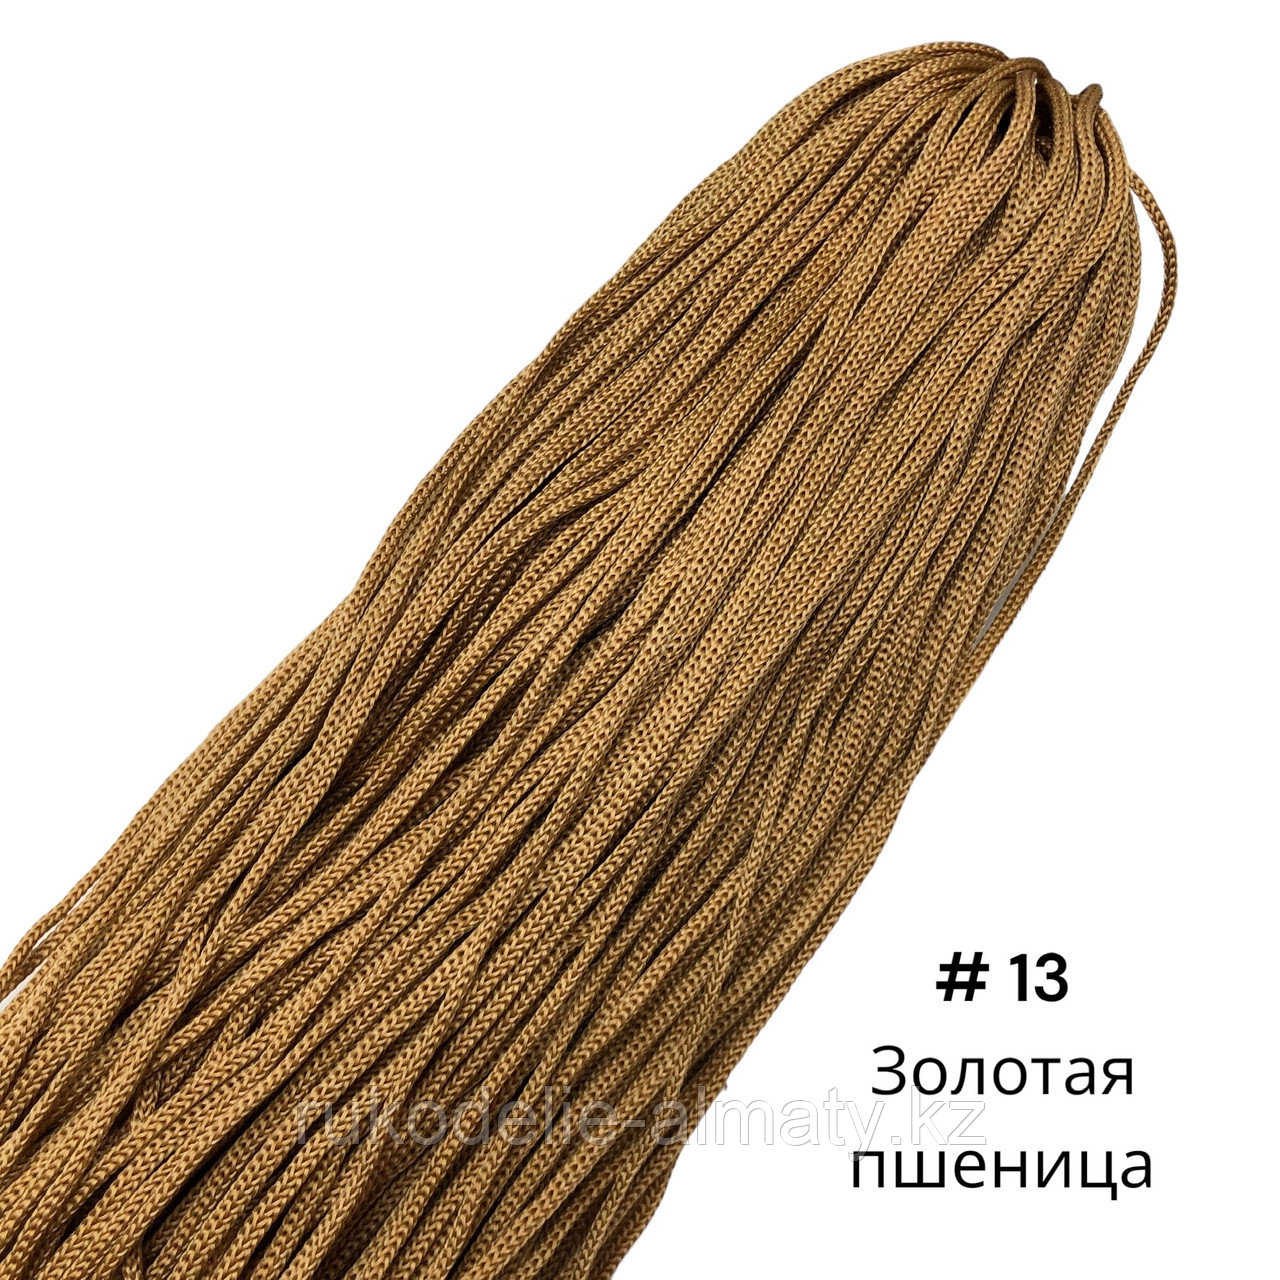 Полиэфирный шнур без сердечника, 3мм, пасма ⠀ золотая пшеница